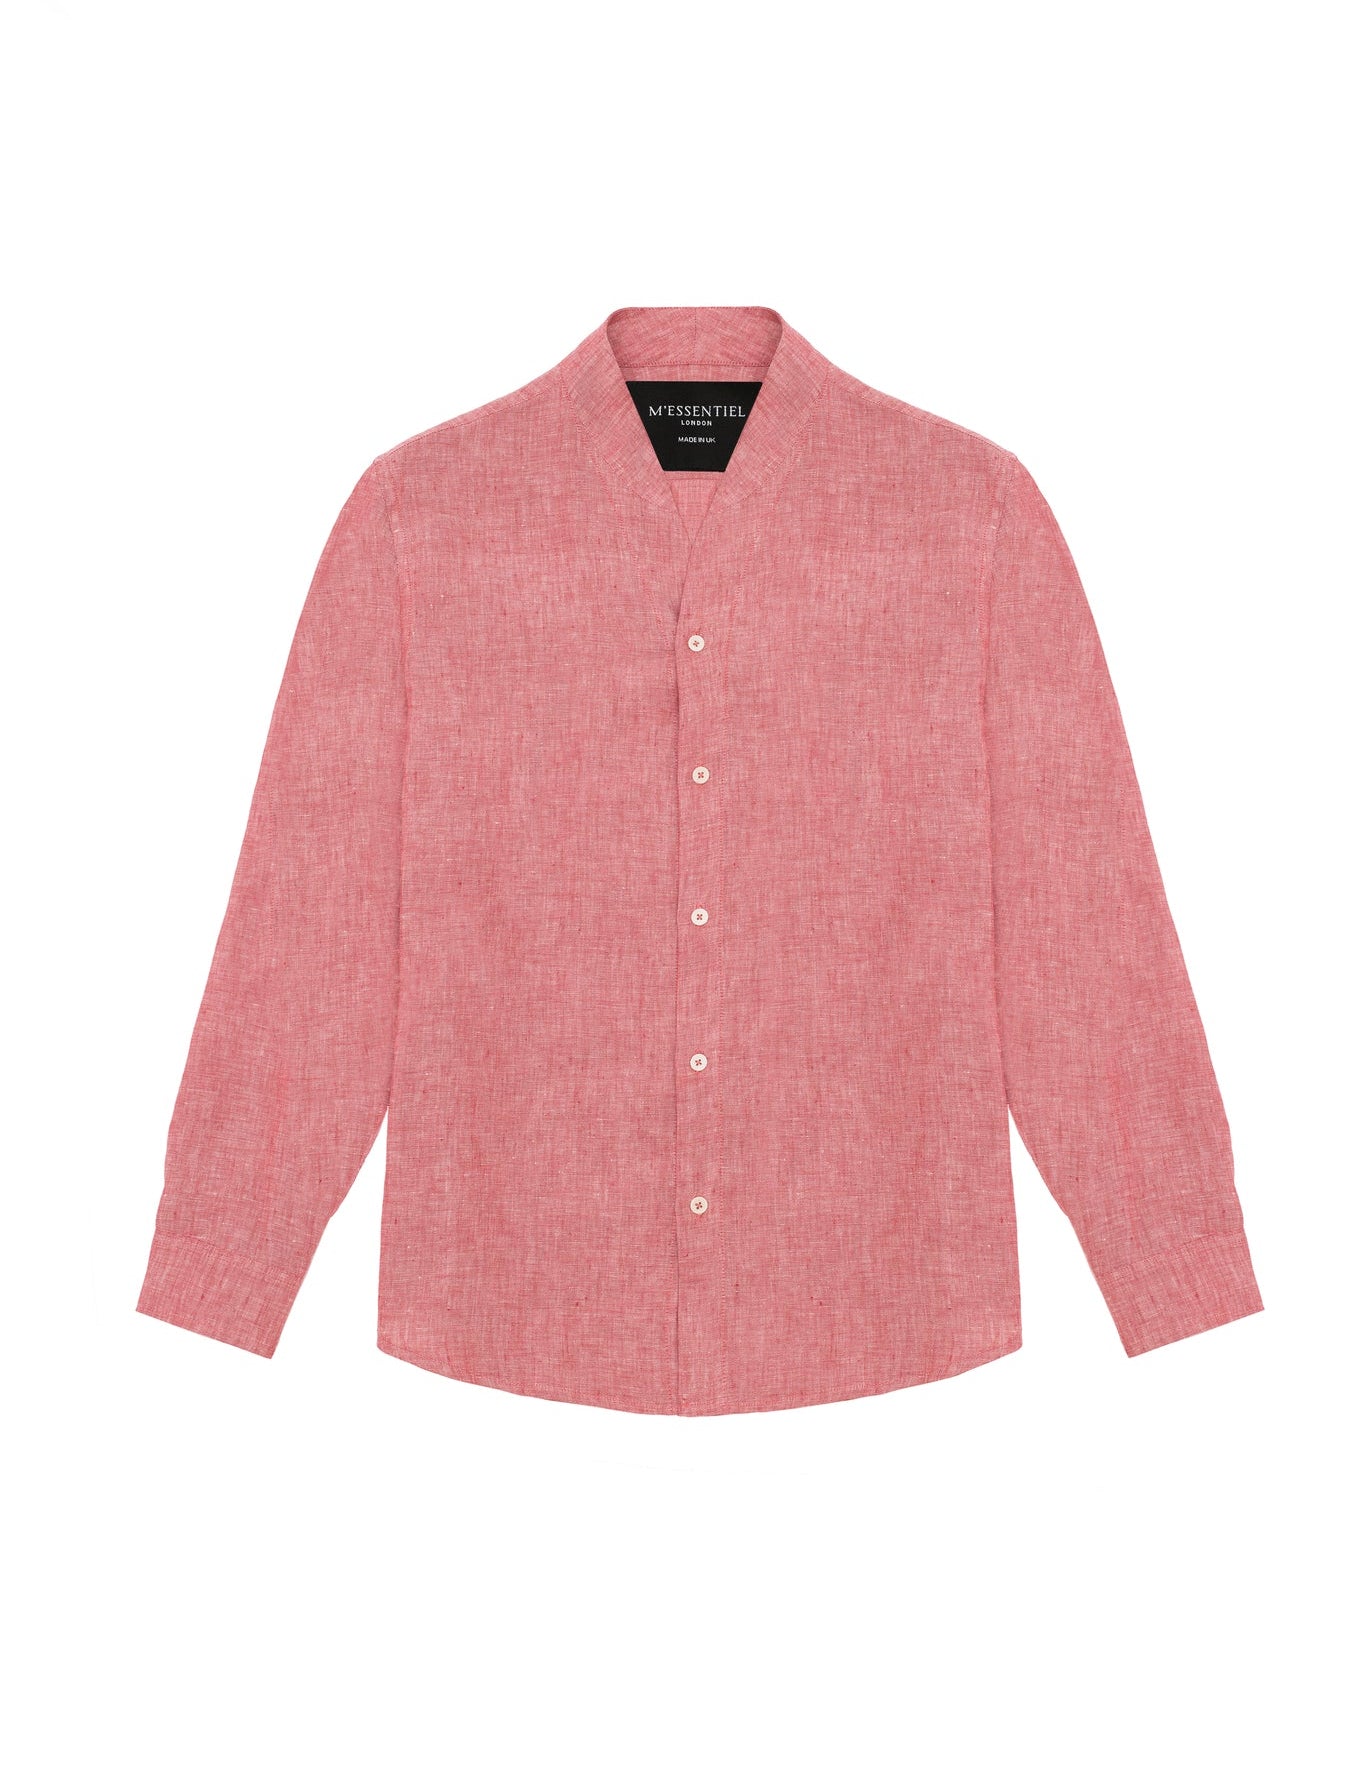 mens-pink-linen-shirt_a4e6797c-65e7-4123-becd-eaca158f98b7.jpg